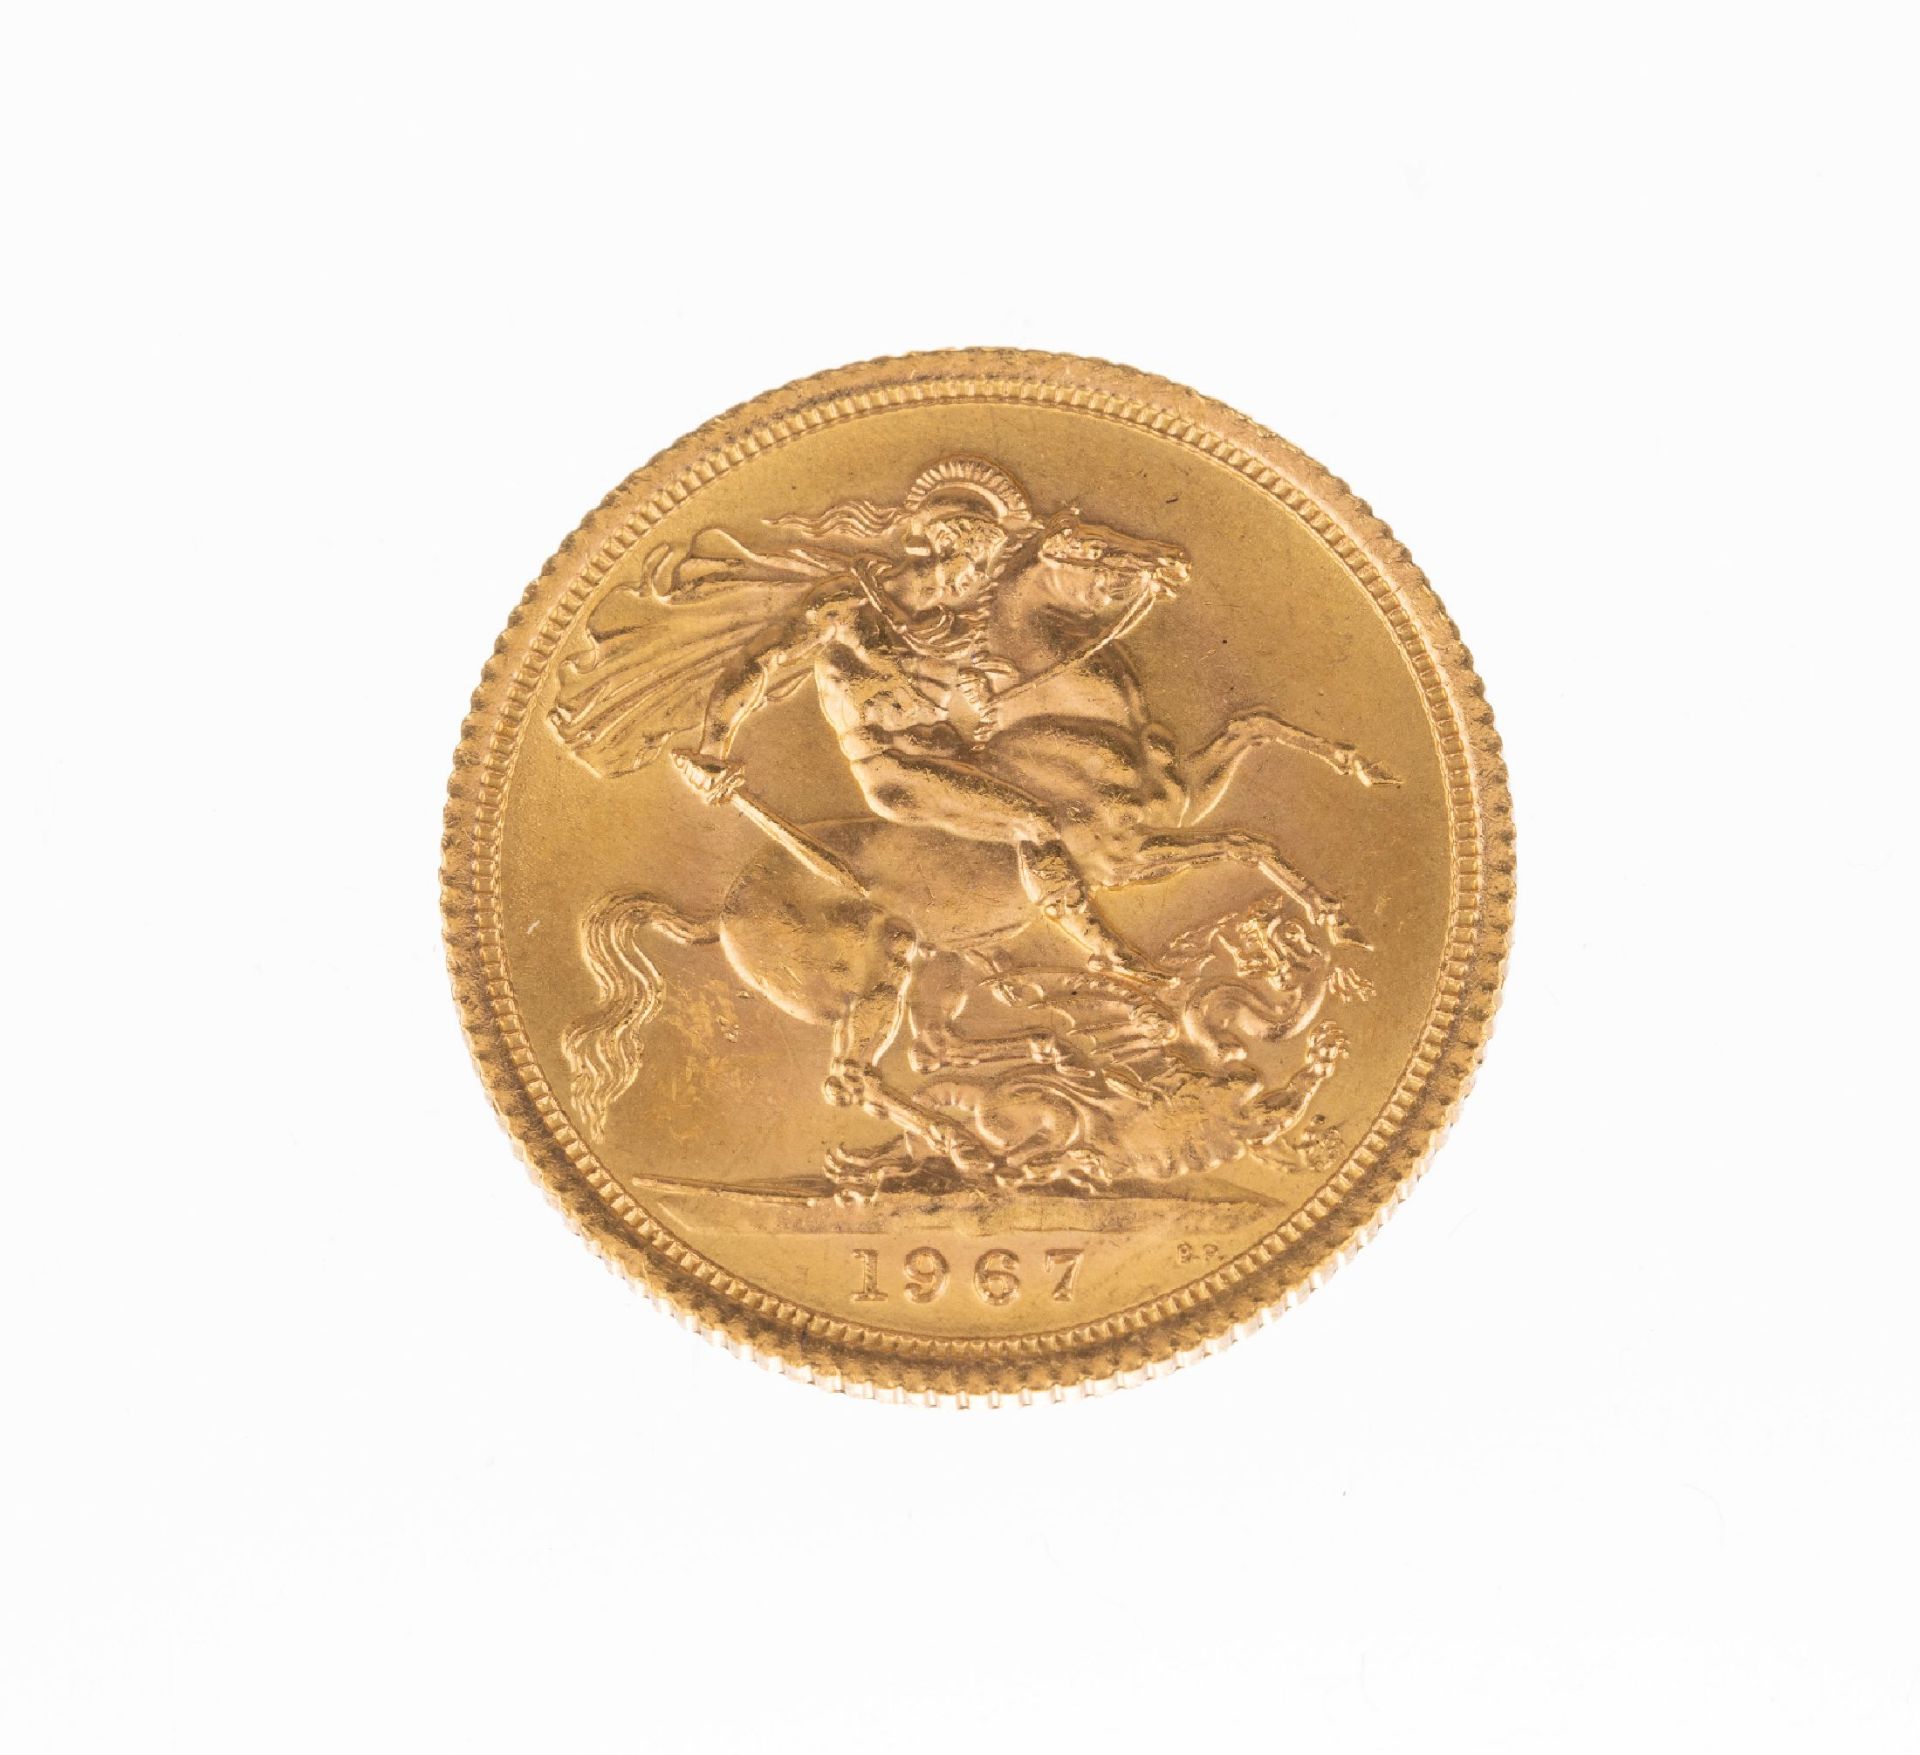 Goldmünze Sovereign, Großbritannien, 1967, Elizabeth - Bild 2 aus 2